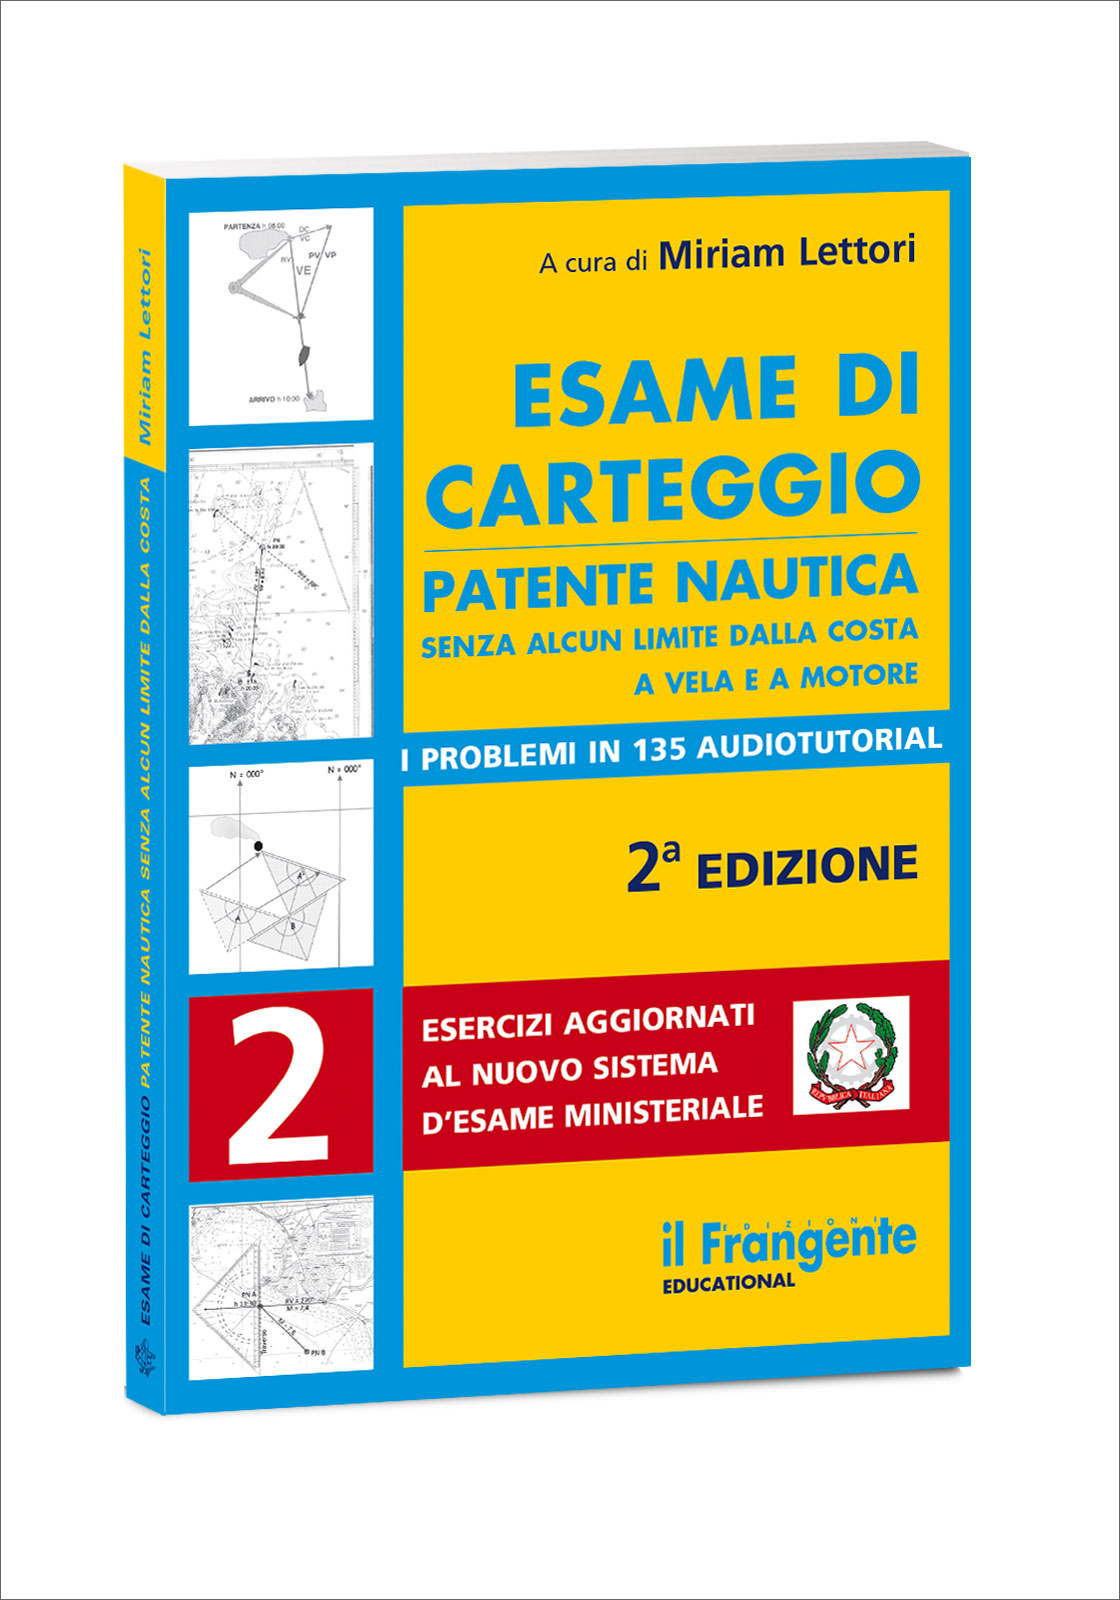 Kit Carteggio Istituto Nautico Patente Nautica